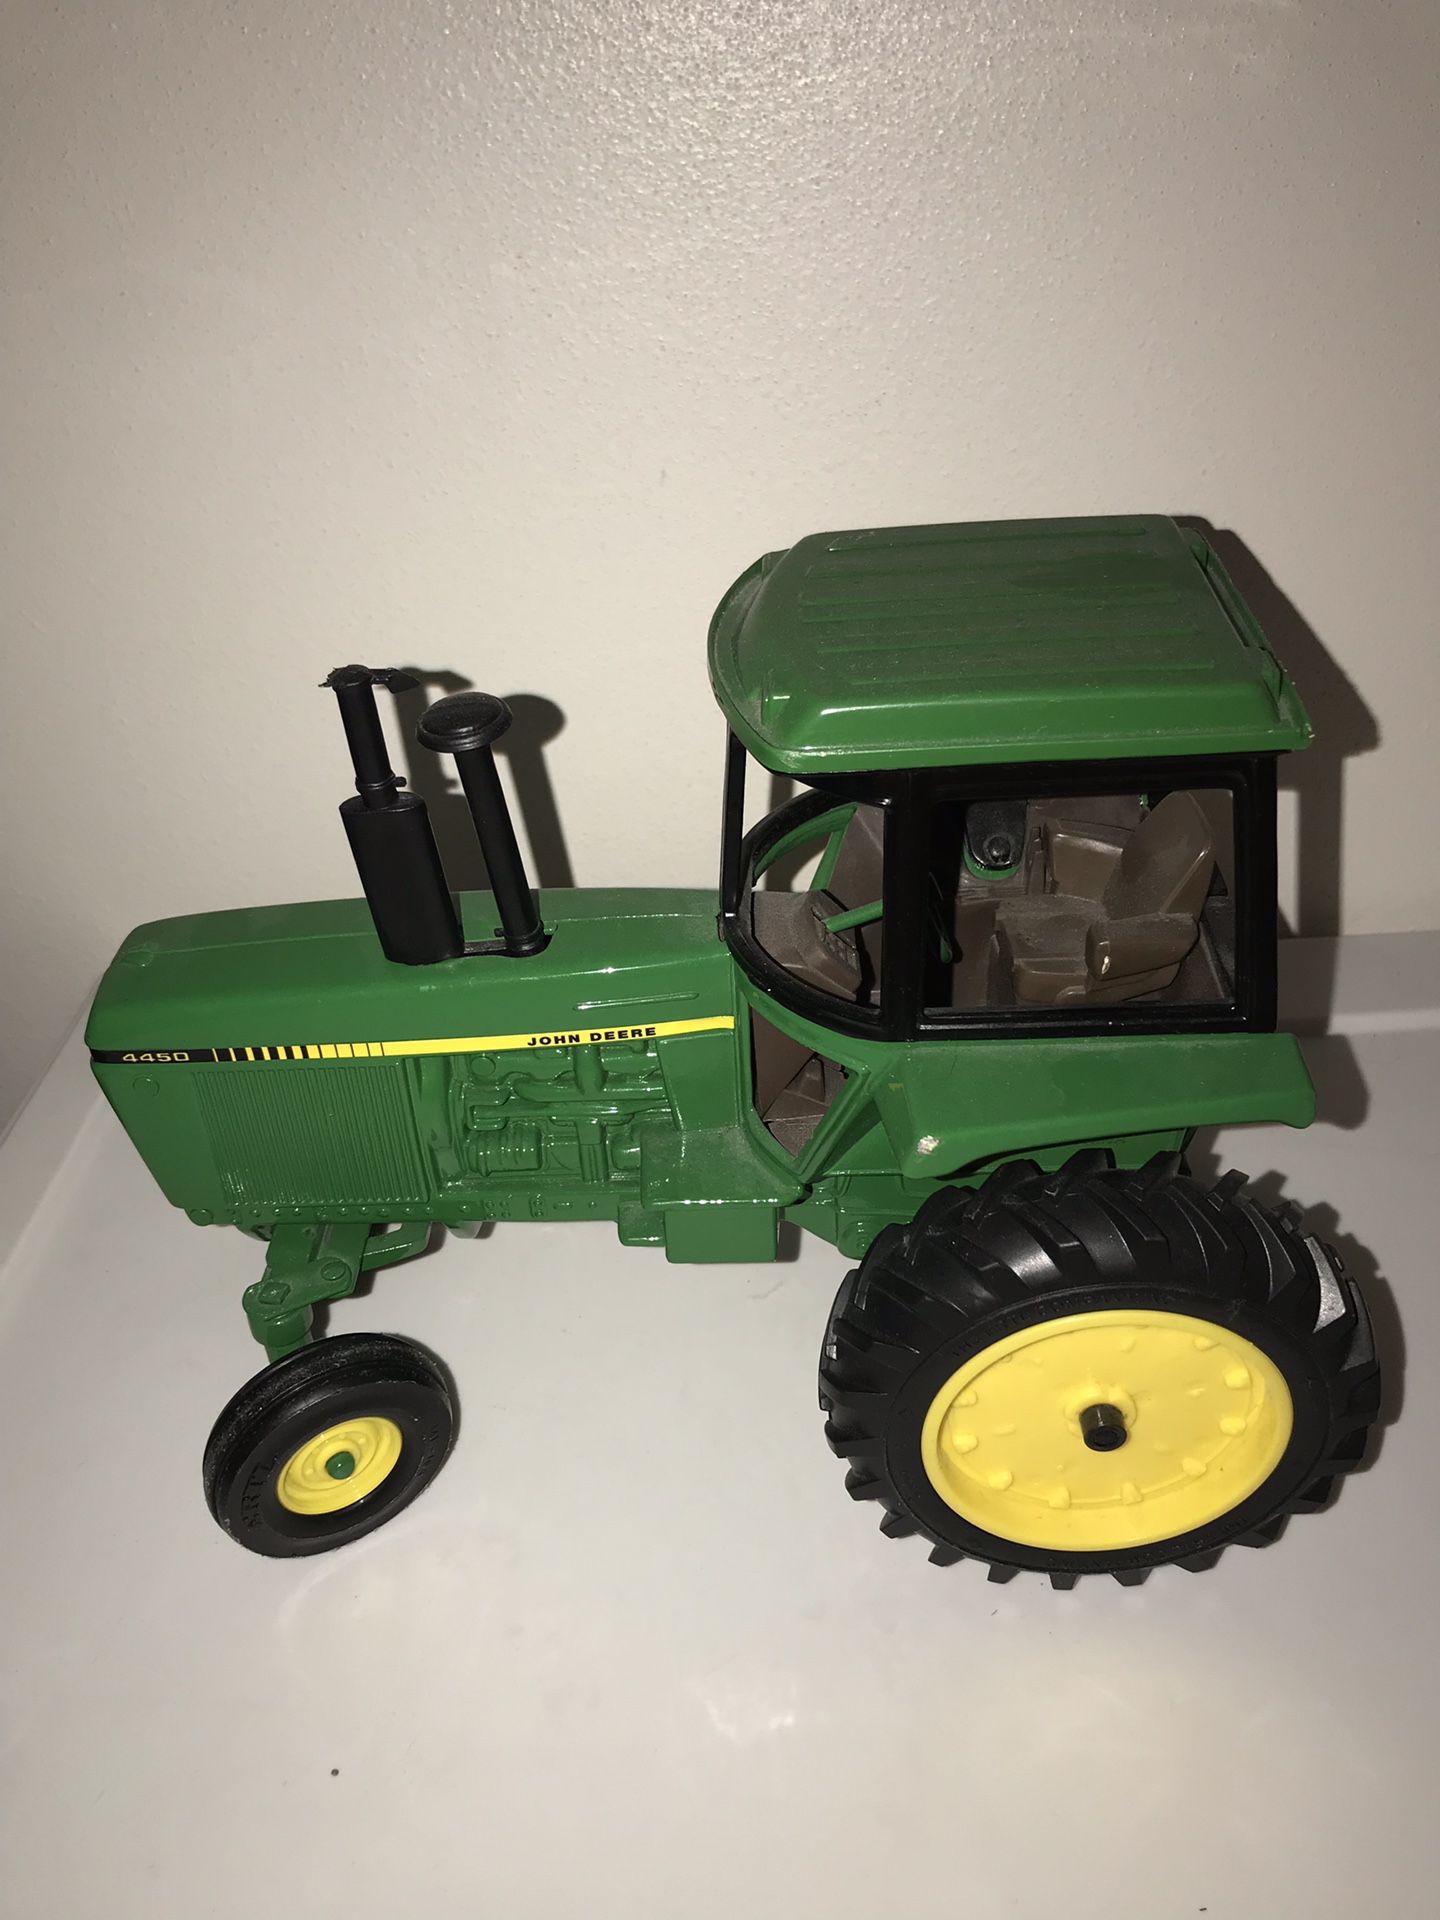 John Deere model tractor